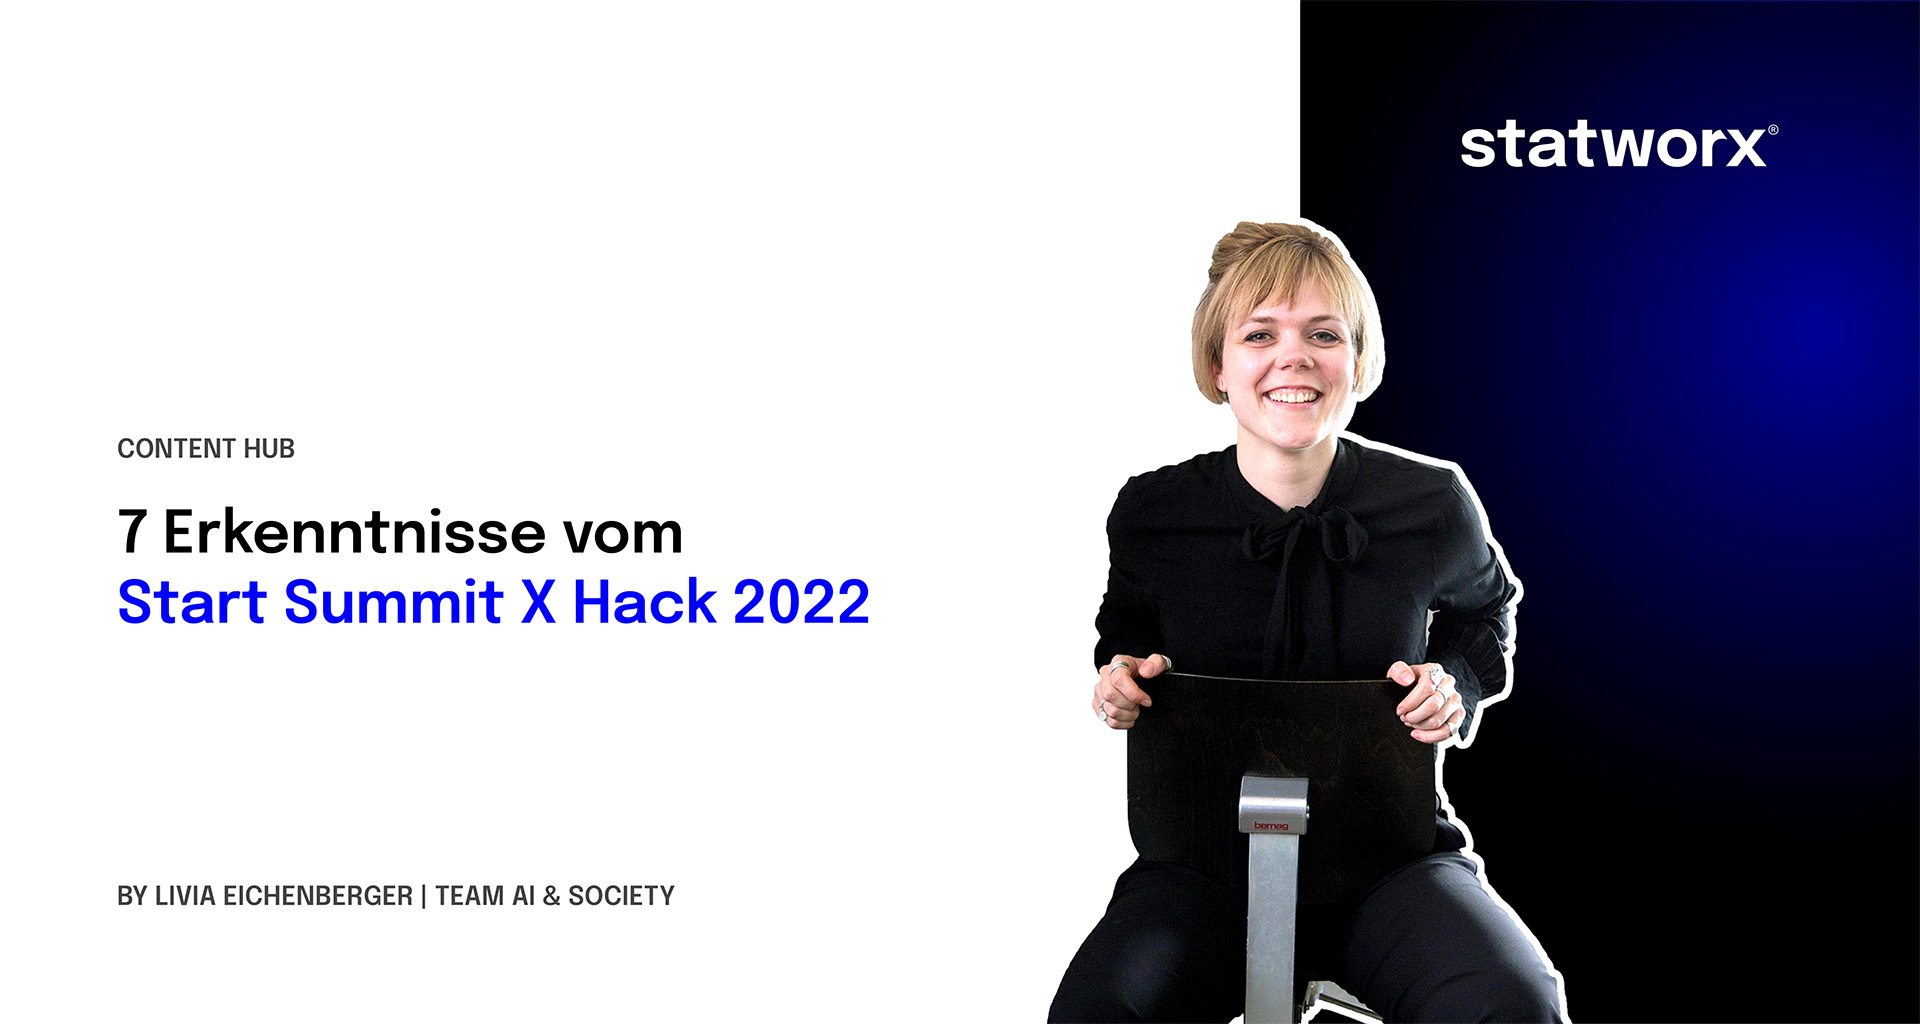 7 Erkenntnisse vom Start Summit X Hack 2022